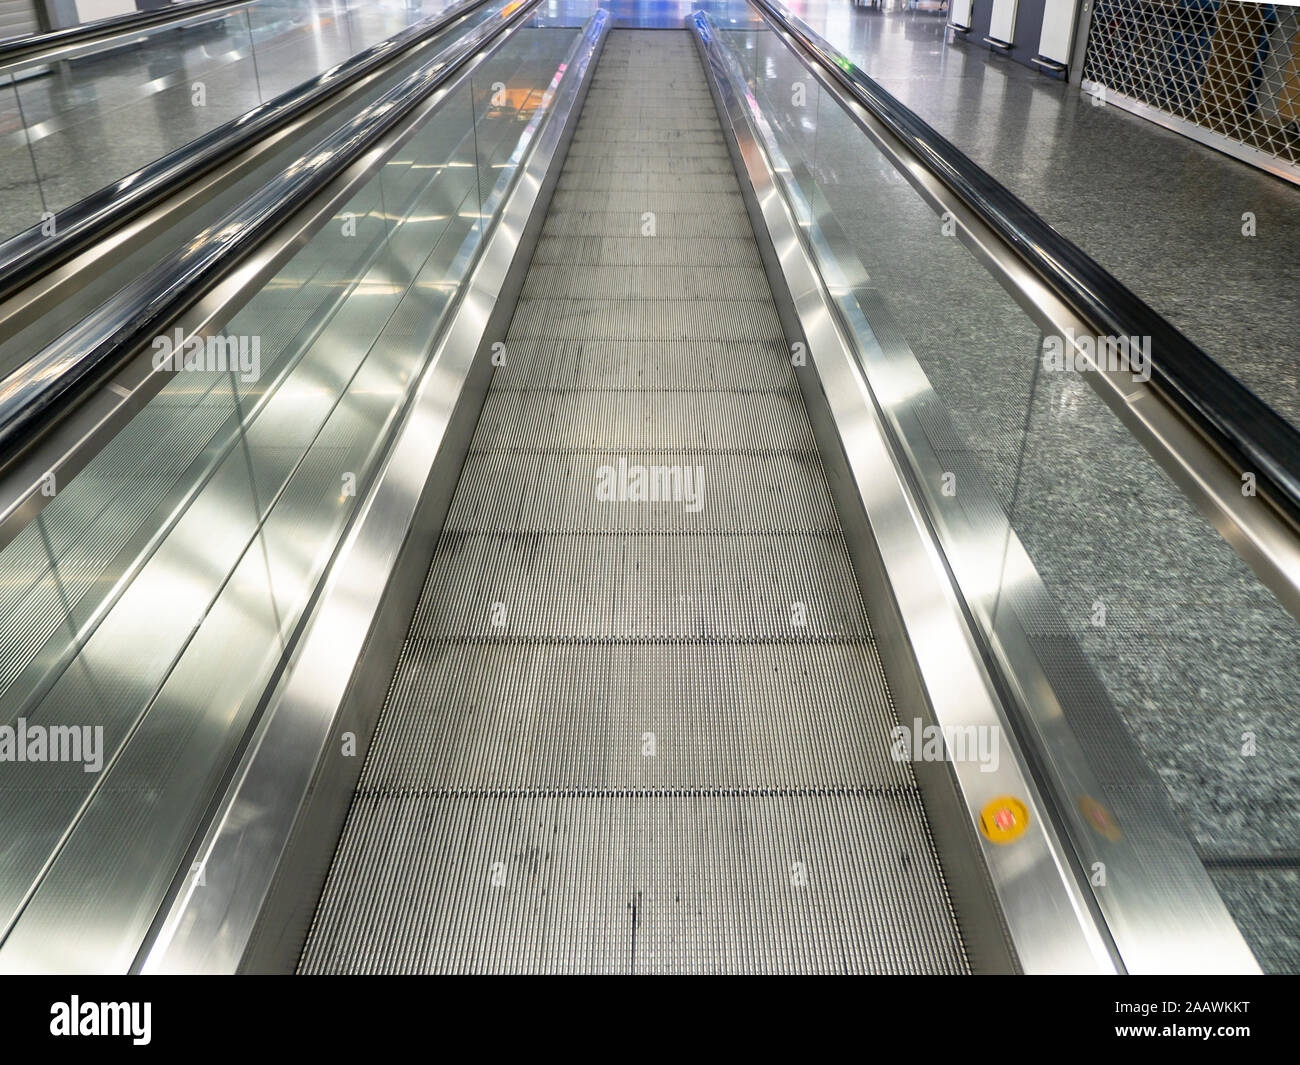 Perspective de diminution de tapis roulant vide à l'aéroport Banque D'Images